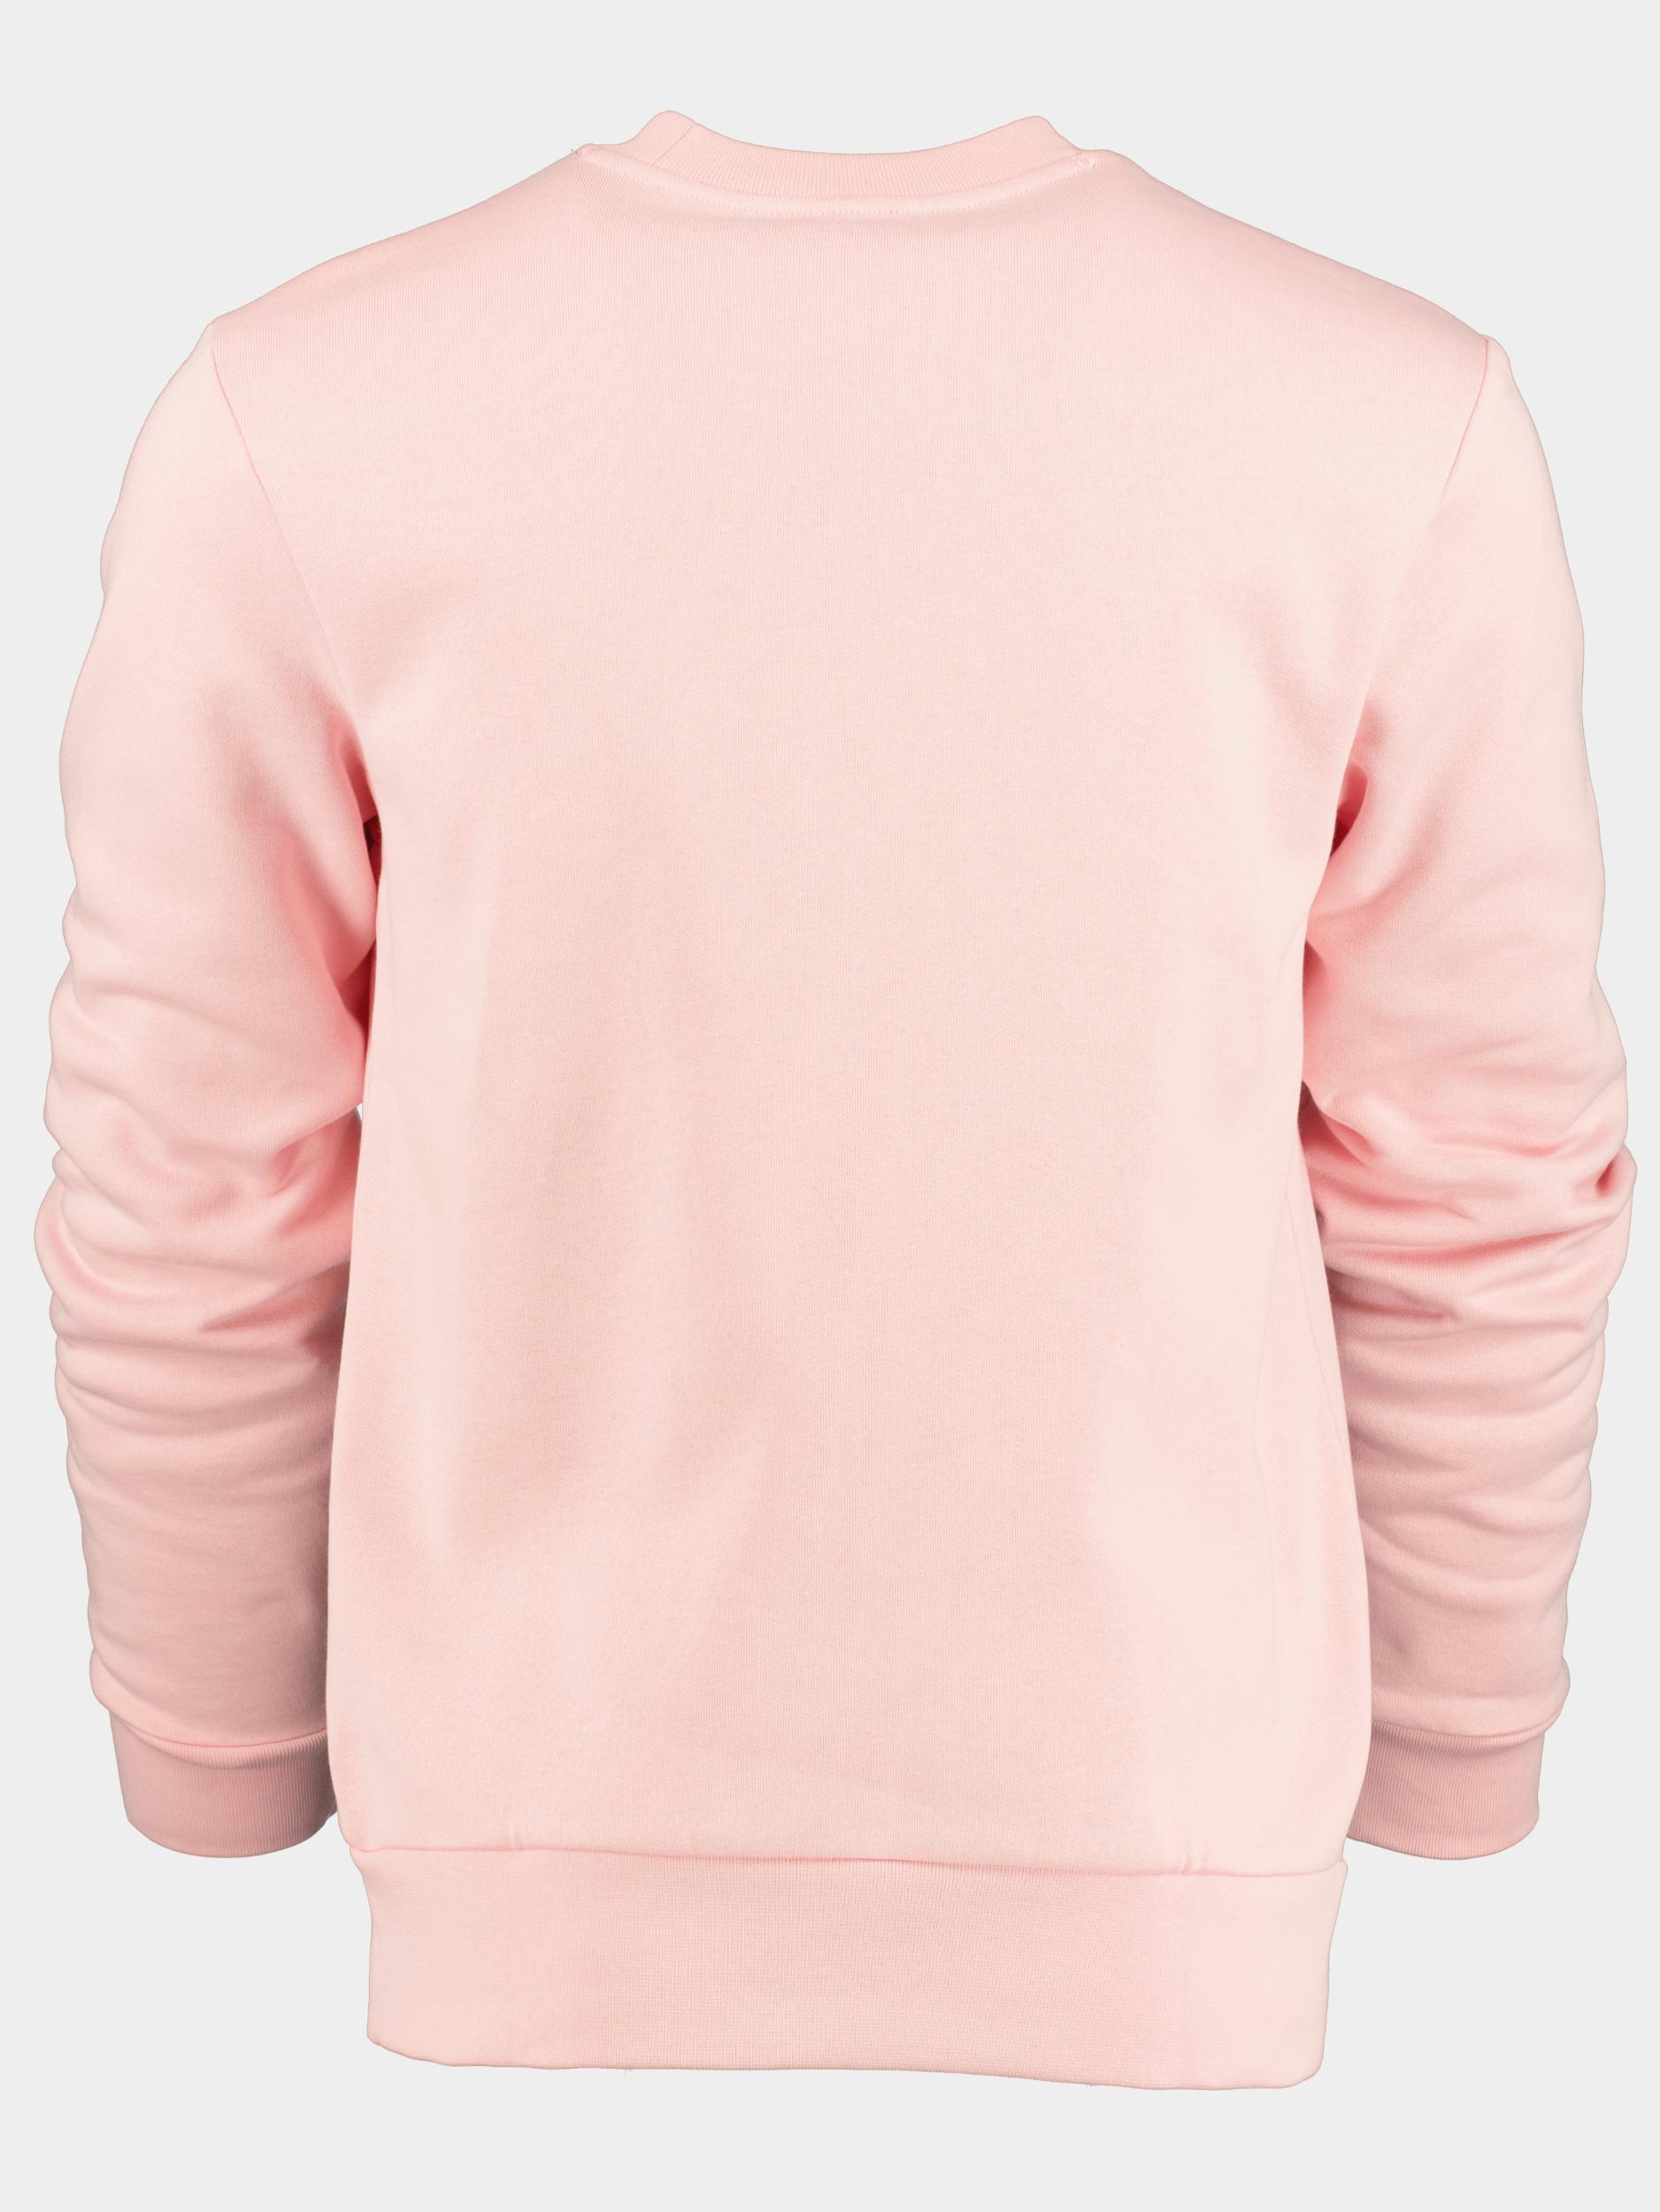 Lacoste Sweater Roze  SH9608/KF9